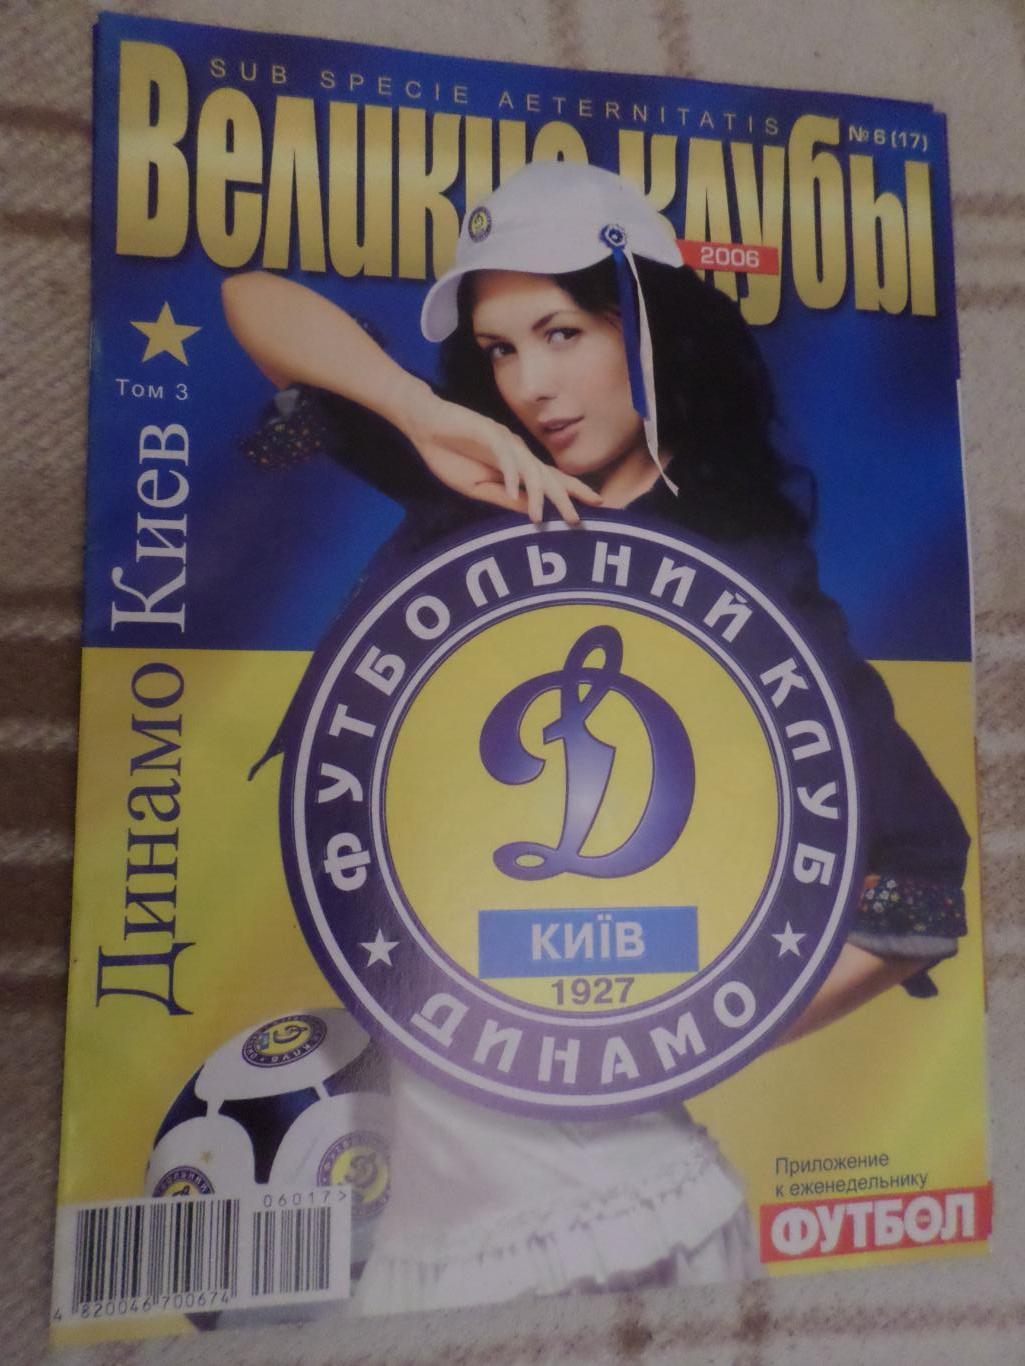 Еженедельник Футбол (Киев) Великие клубы спецвыпуск 6 2006 Динамо Киев т.3